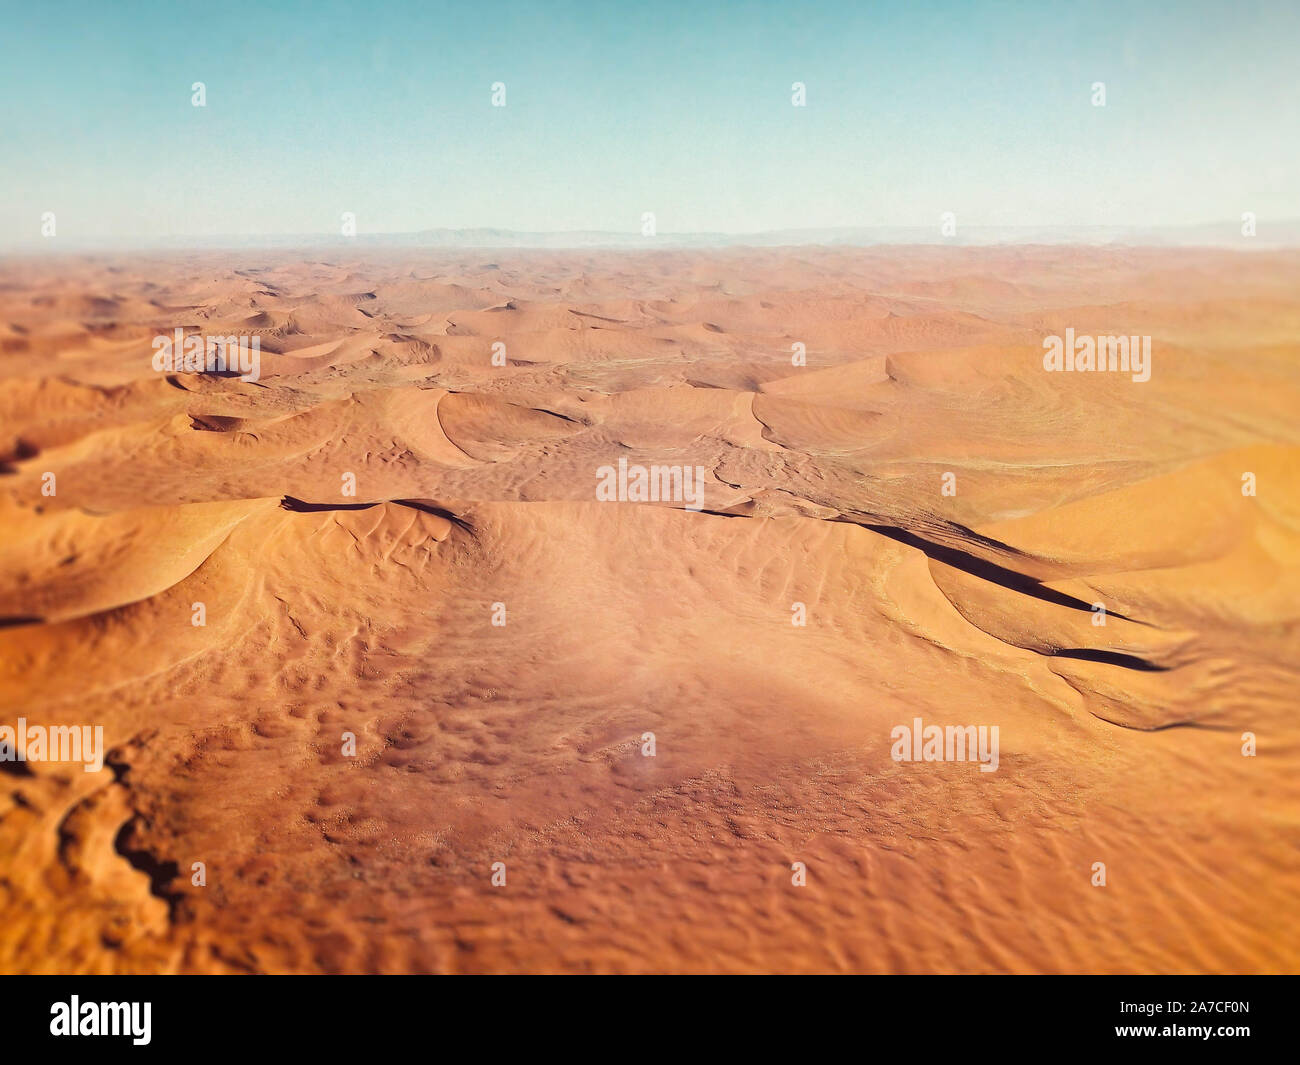 sand dunes in Namibia desert Stock Photo